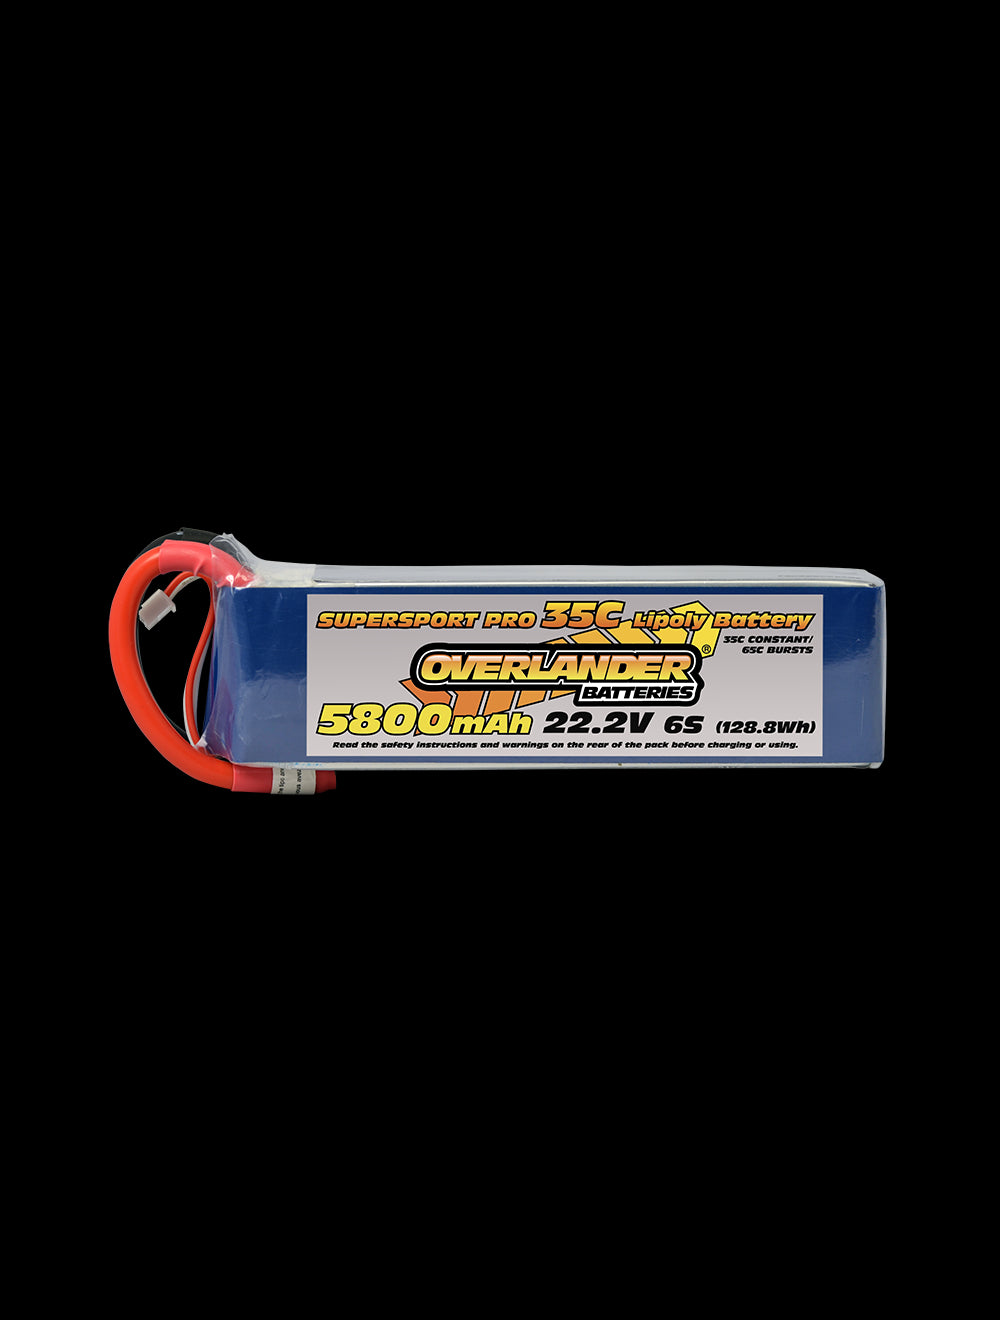 Overlander 5800mAh 22.2V 6S 35C Supersport Pro LiPo Battery - XT90 Connector 3116